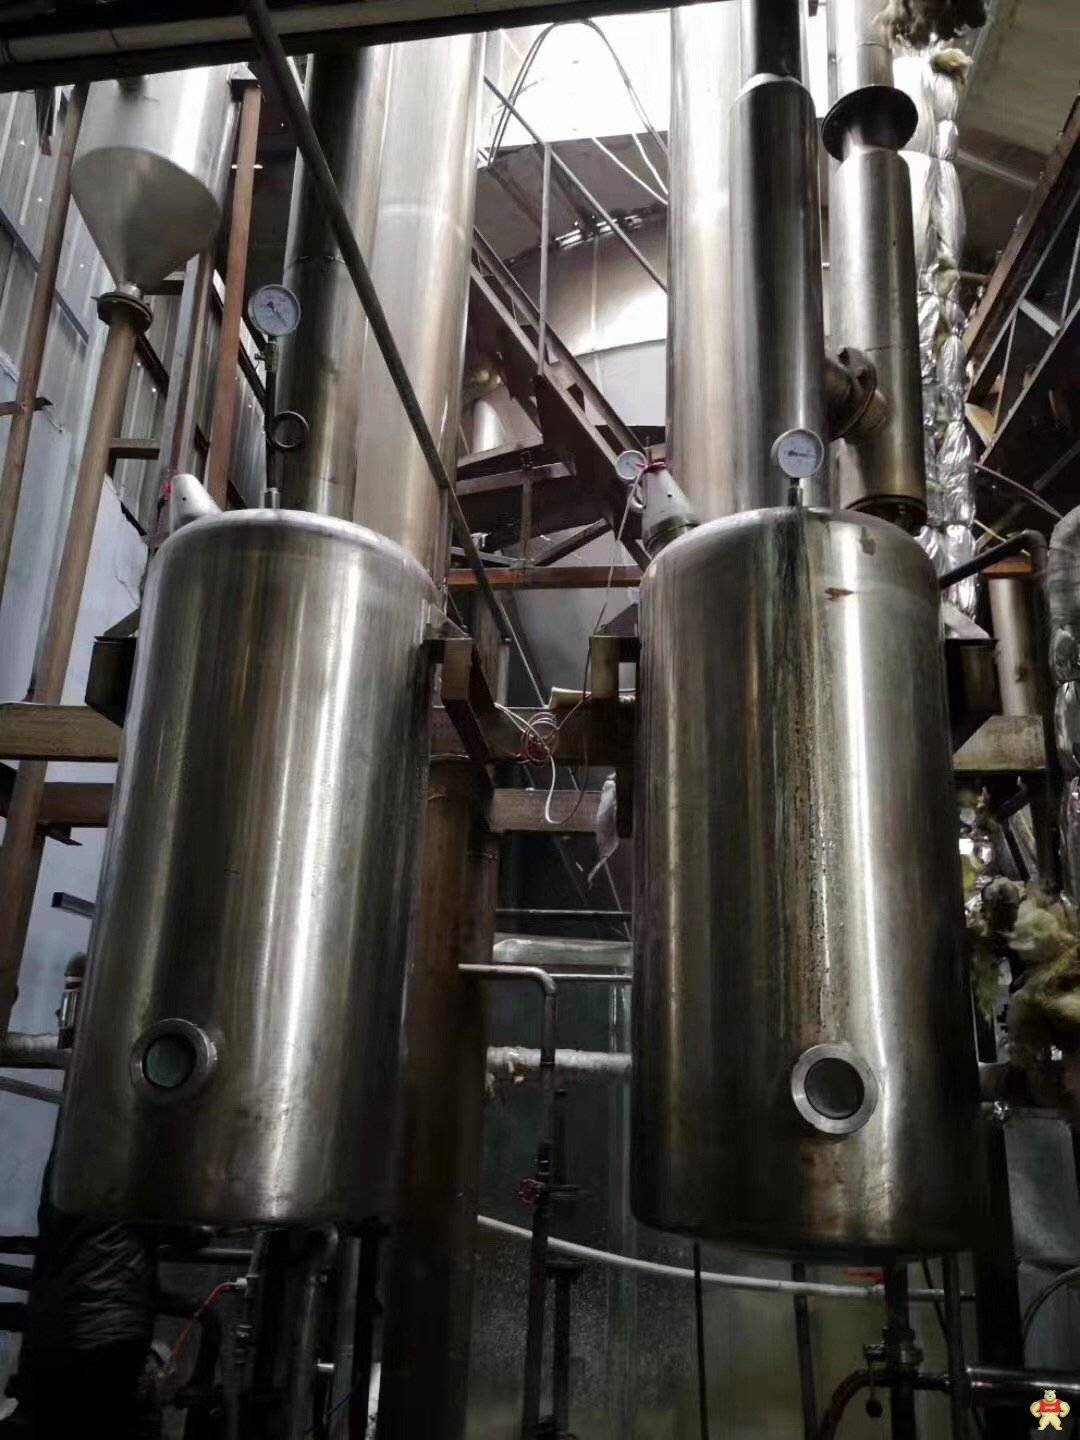 二手3吨双单效蒸发器 二手蒸发器,二手不锈钢蒸发器,二手3吨单效蒸发器,二手不锈钢蒸发器,回收二手蒸发器